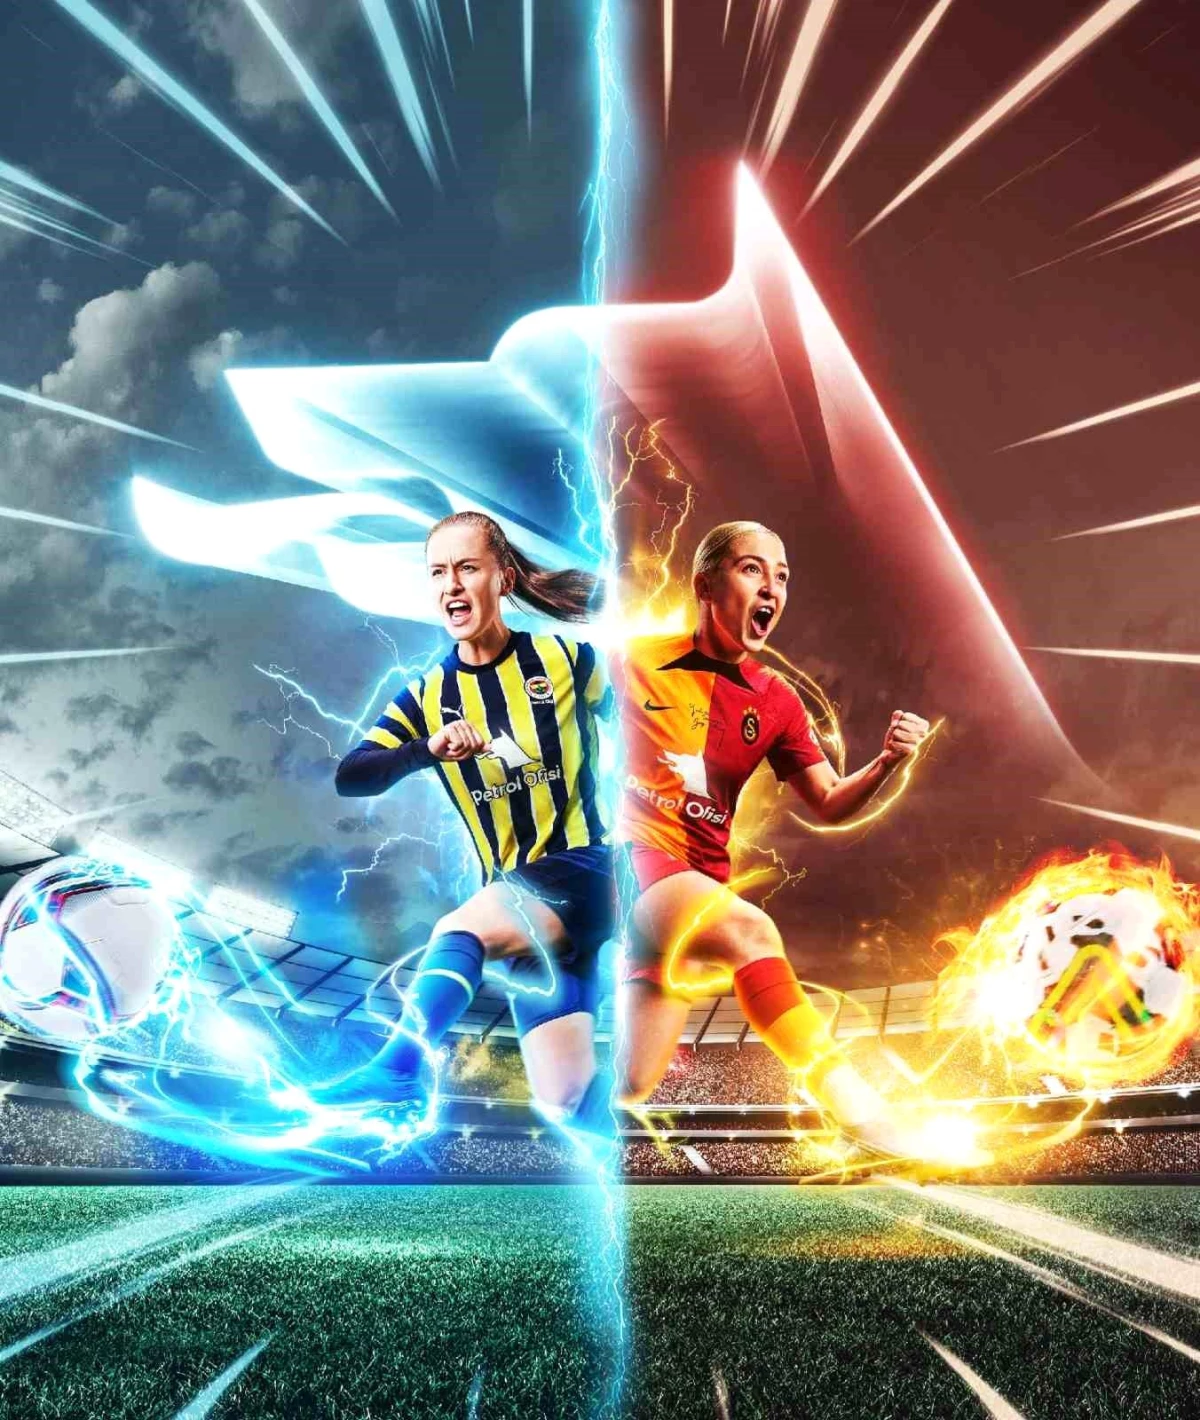 Petrol Ofisi Sponsorluğunda Galatasaray ve Fenerbahçe Kadın Futbol Takımları Karşı Karşıya Geliyor